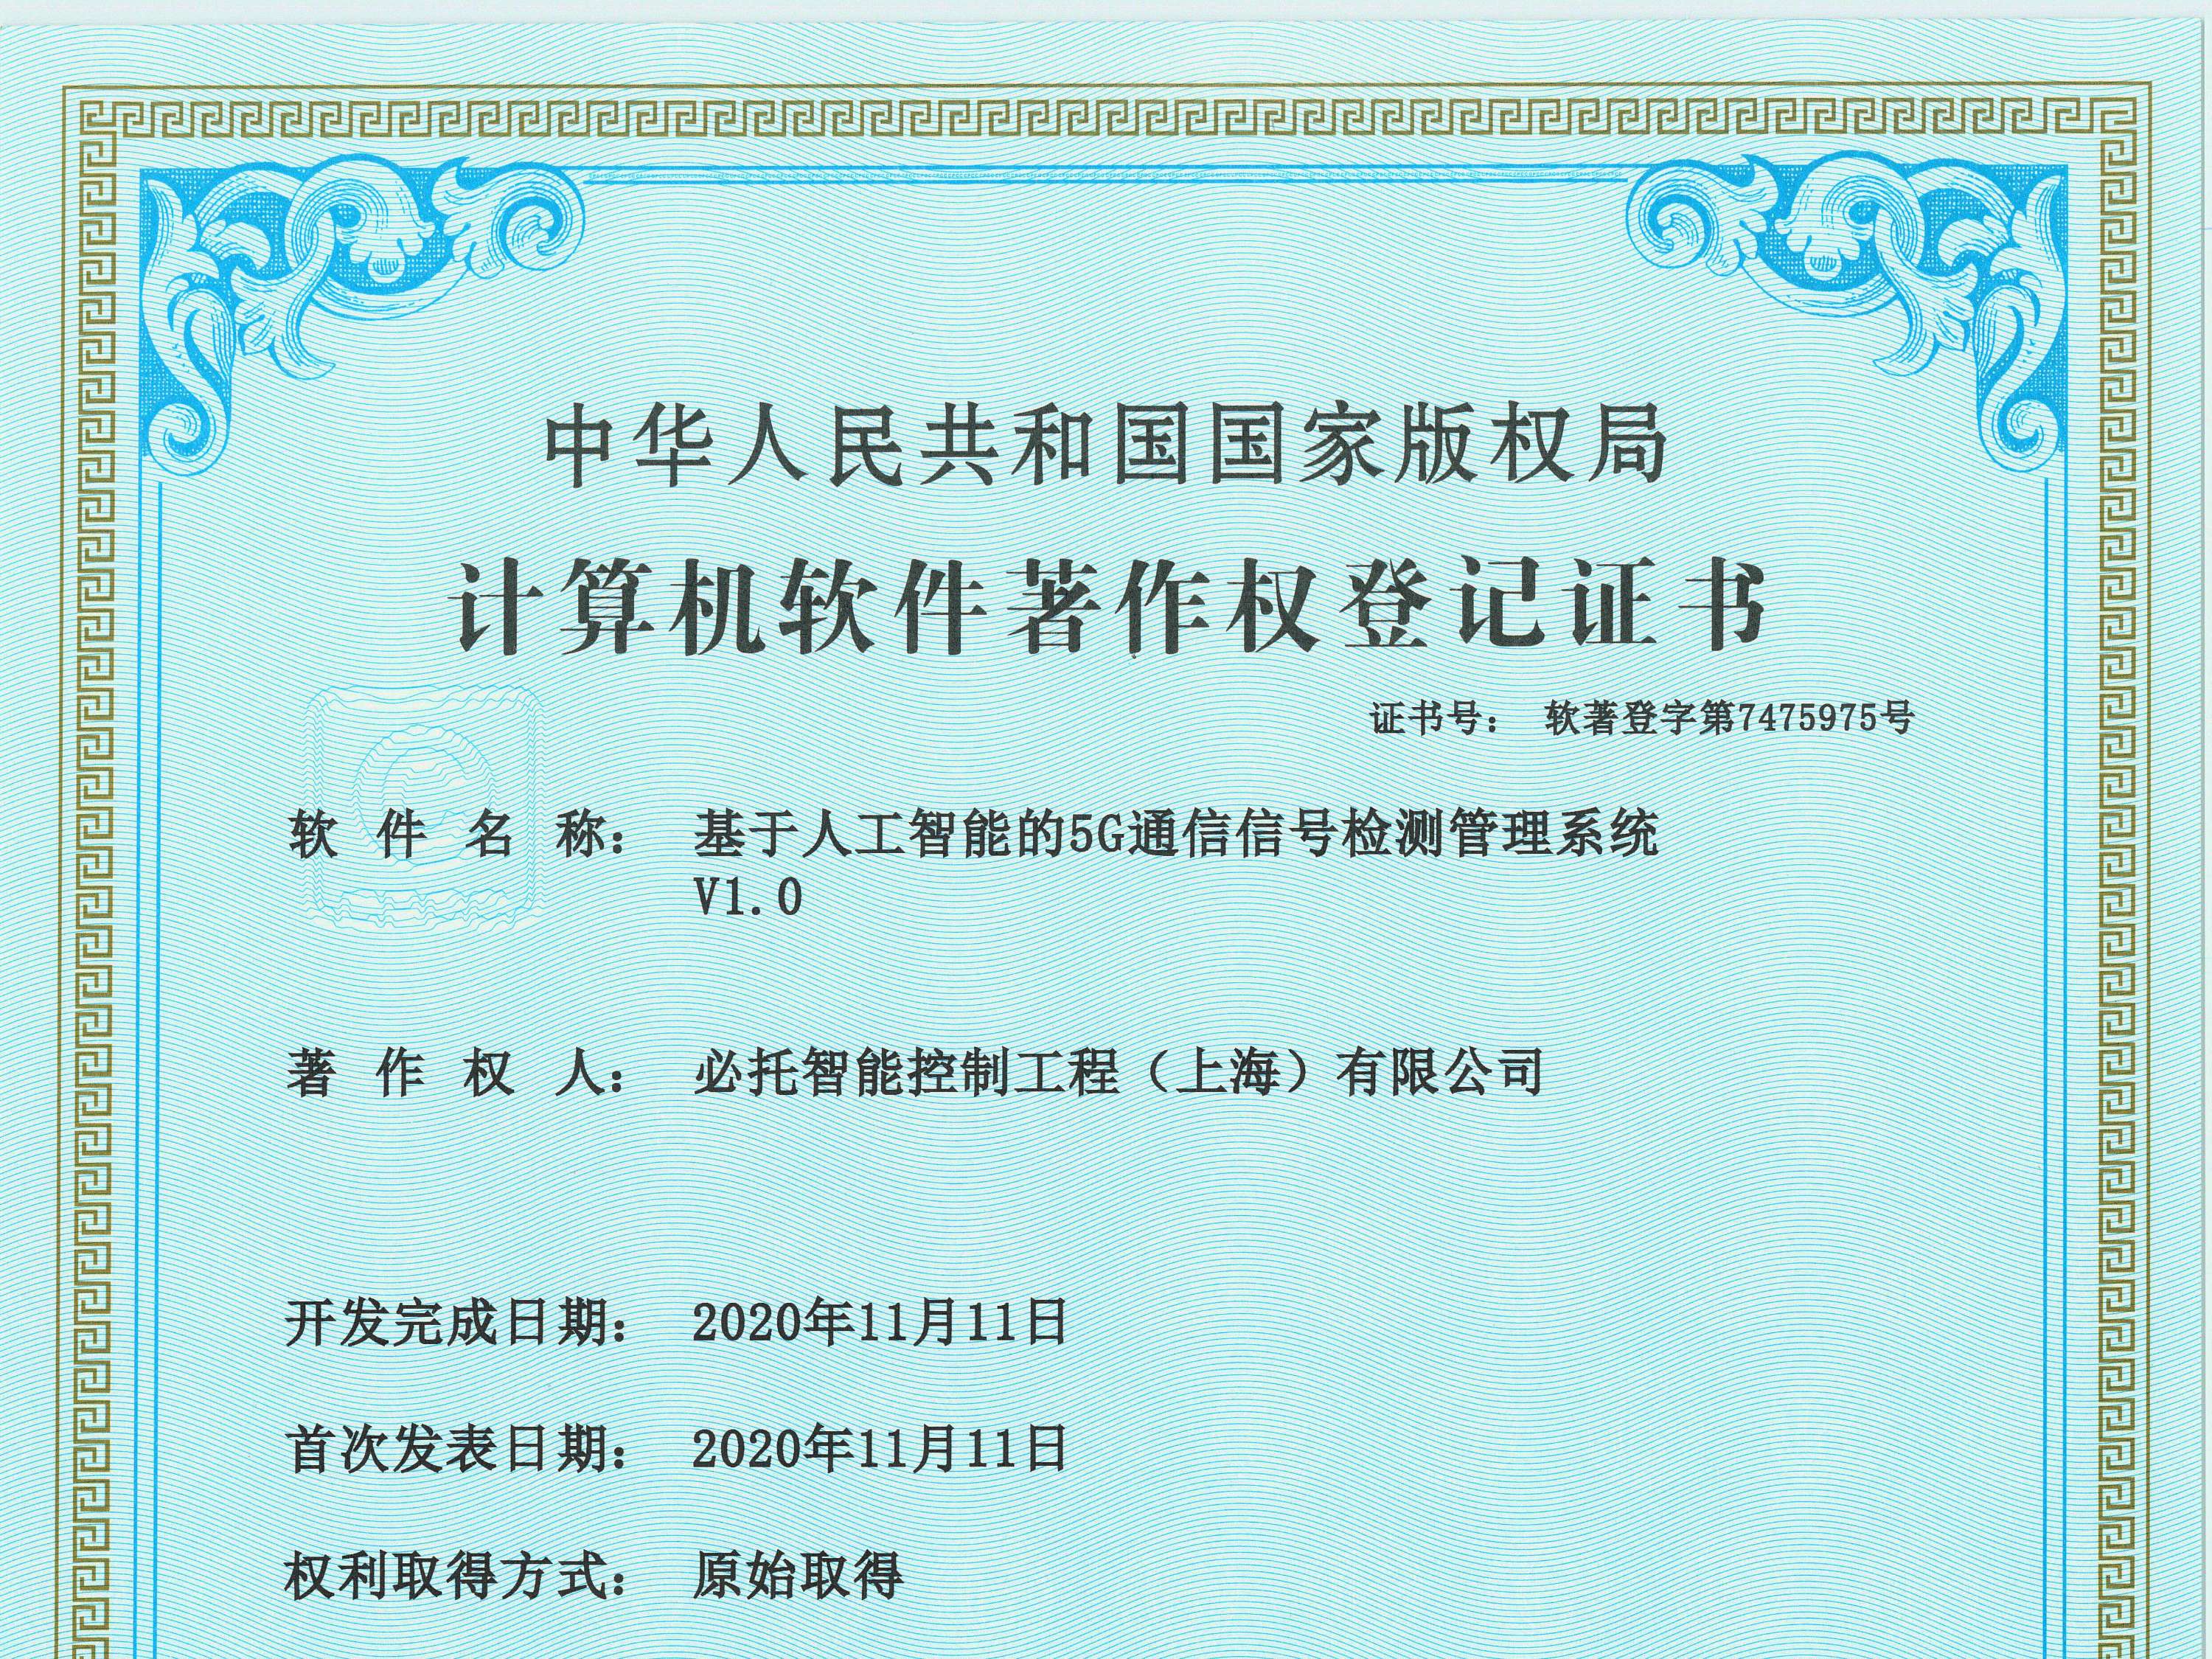 正道瑞特斯工程技术（上海）有限公司知识产权4